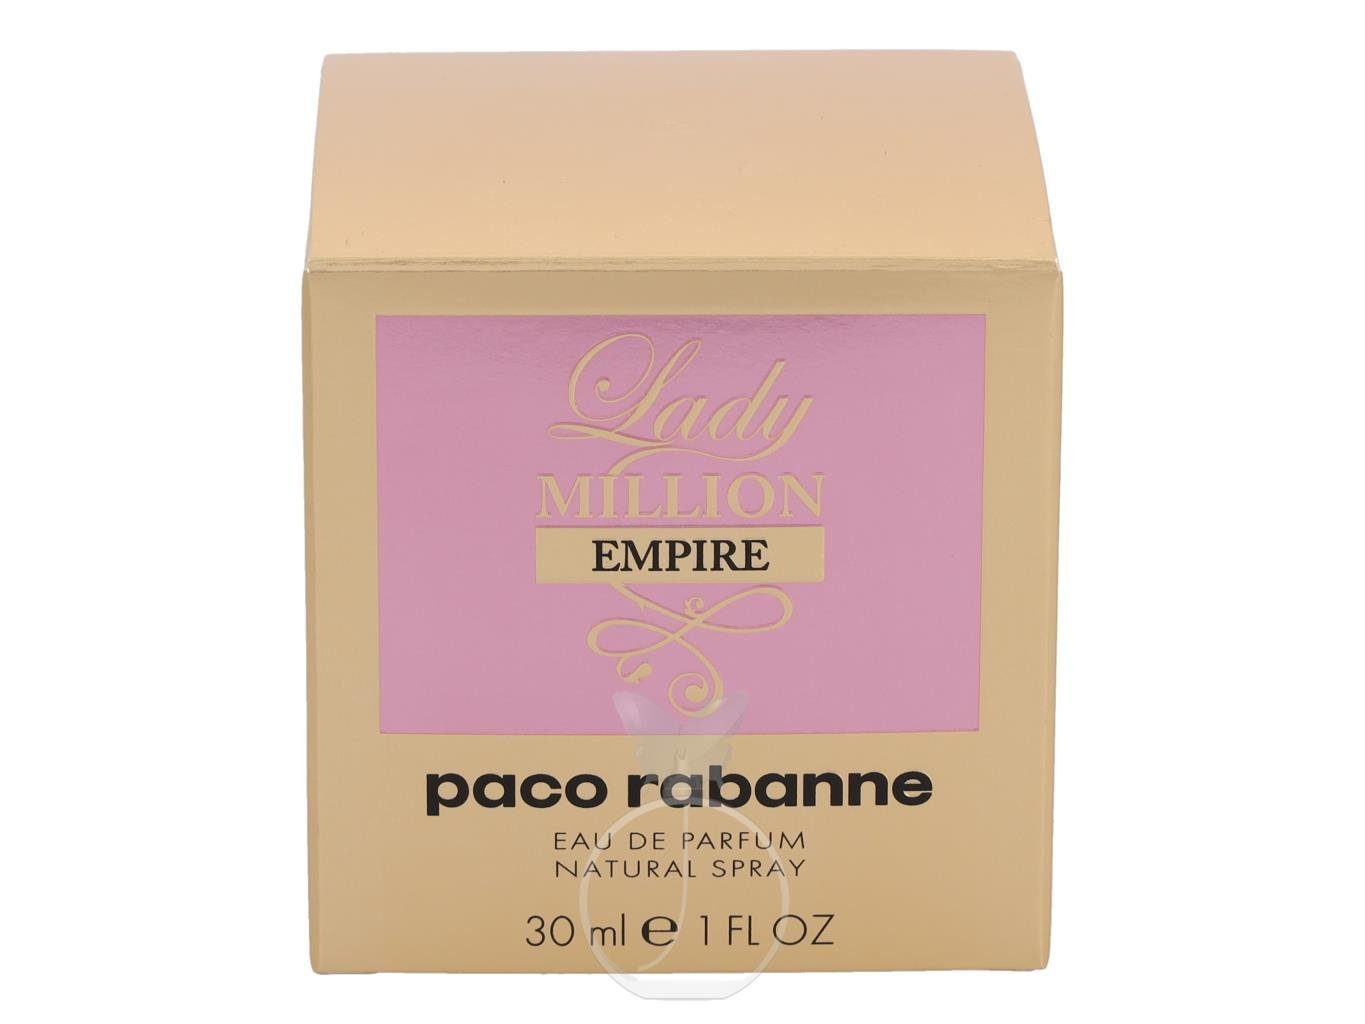 Million Parfum 30 Eau de paco Empire rabanne paco Extrait rabanne Parfum Lady ml